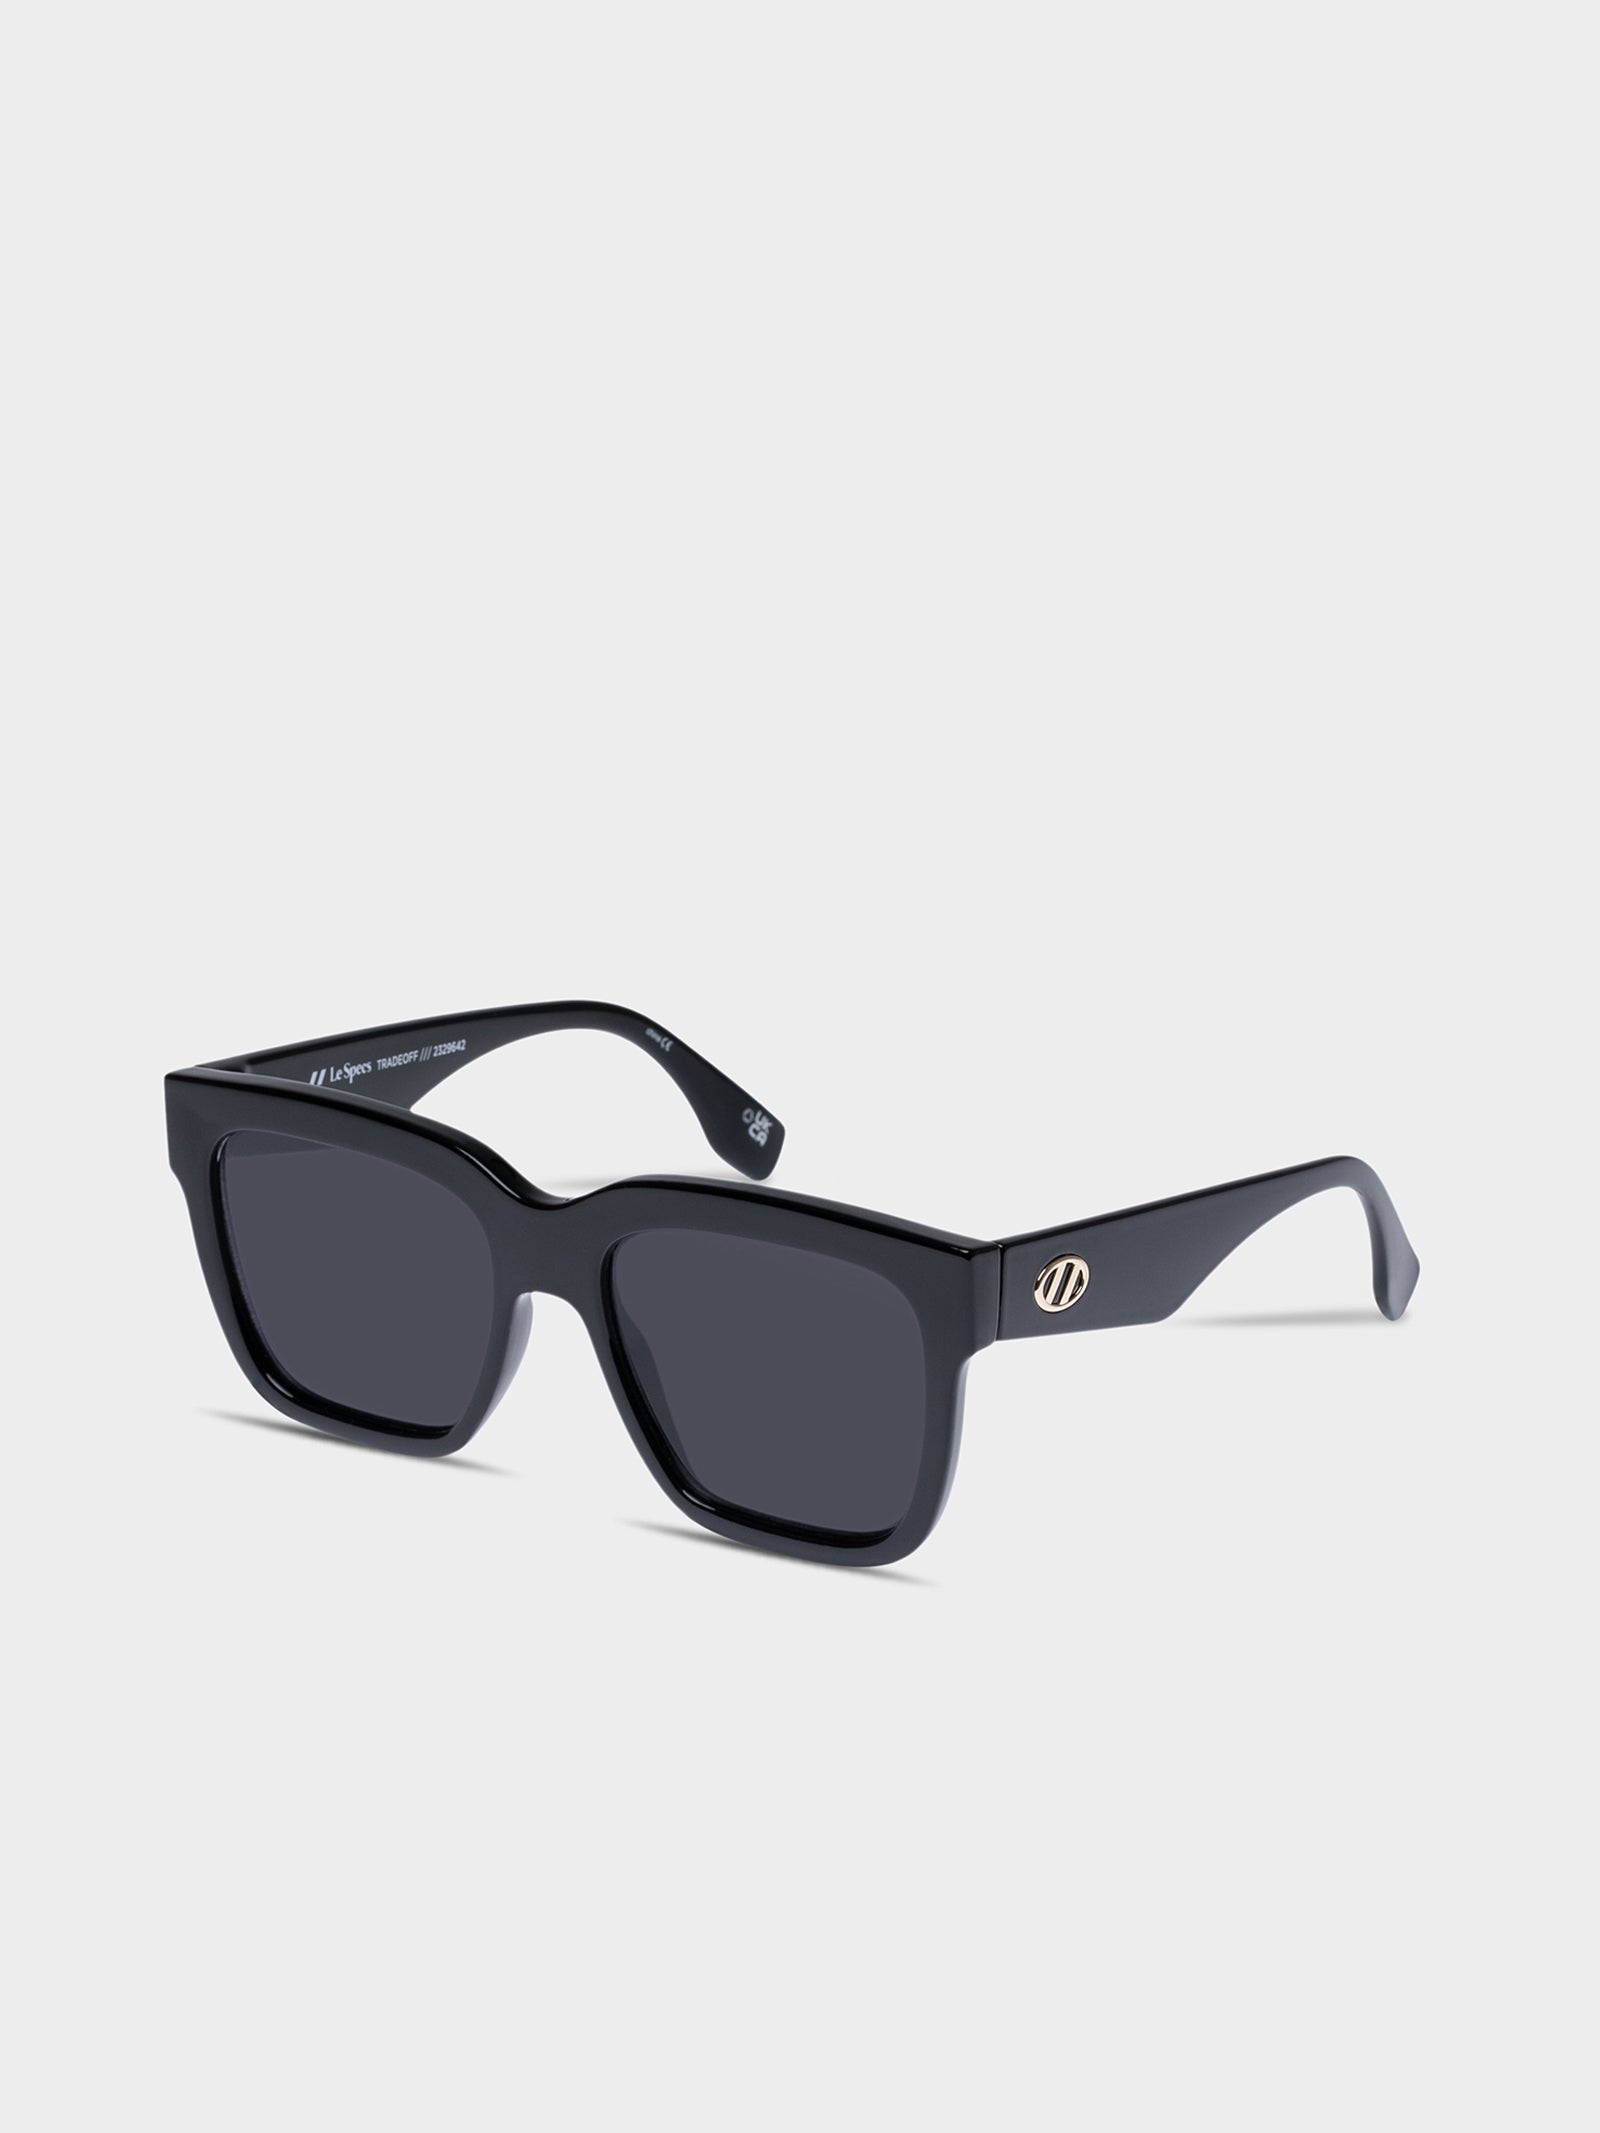 Tradeoff Sunglasses in Black Smoke Mono - Glue Store